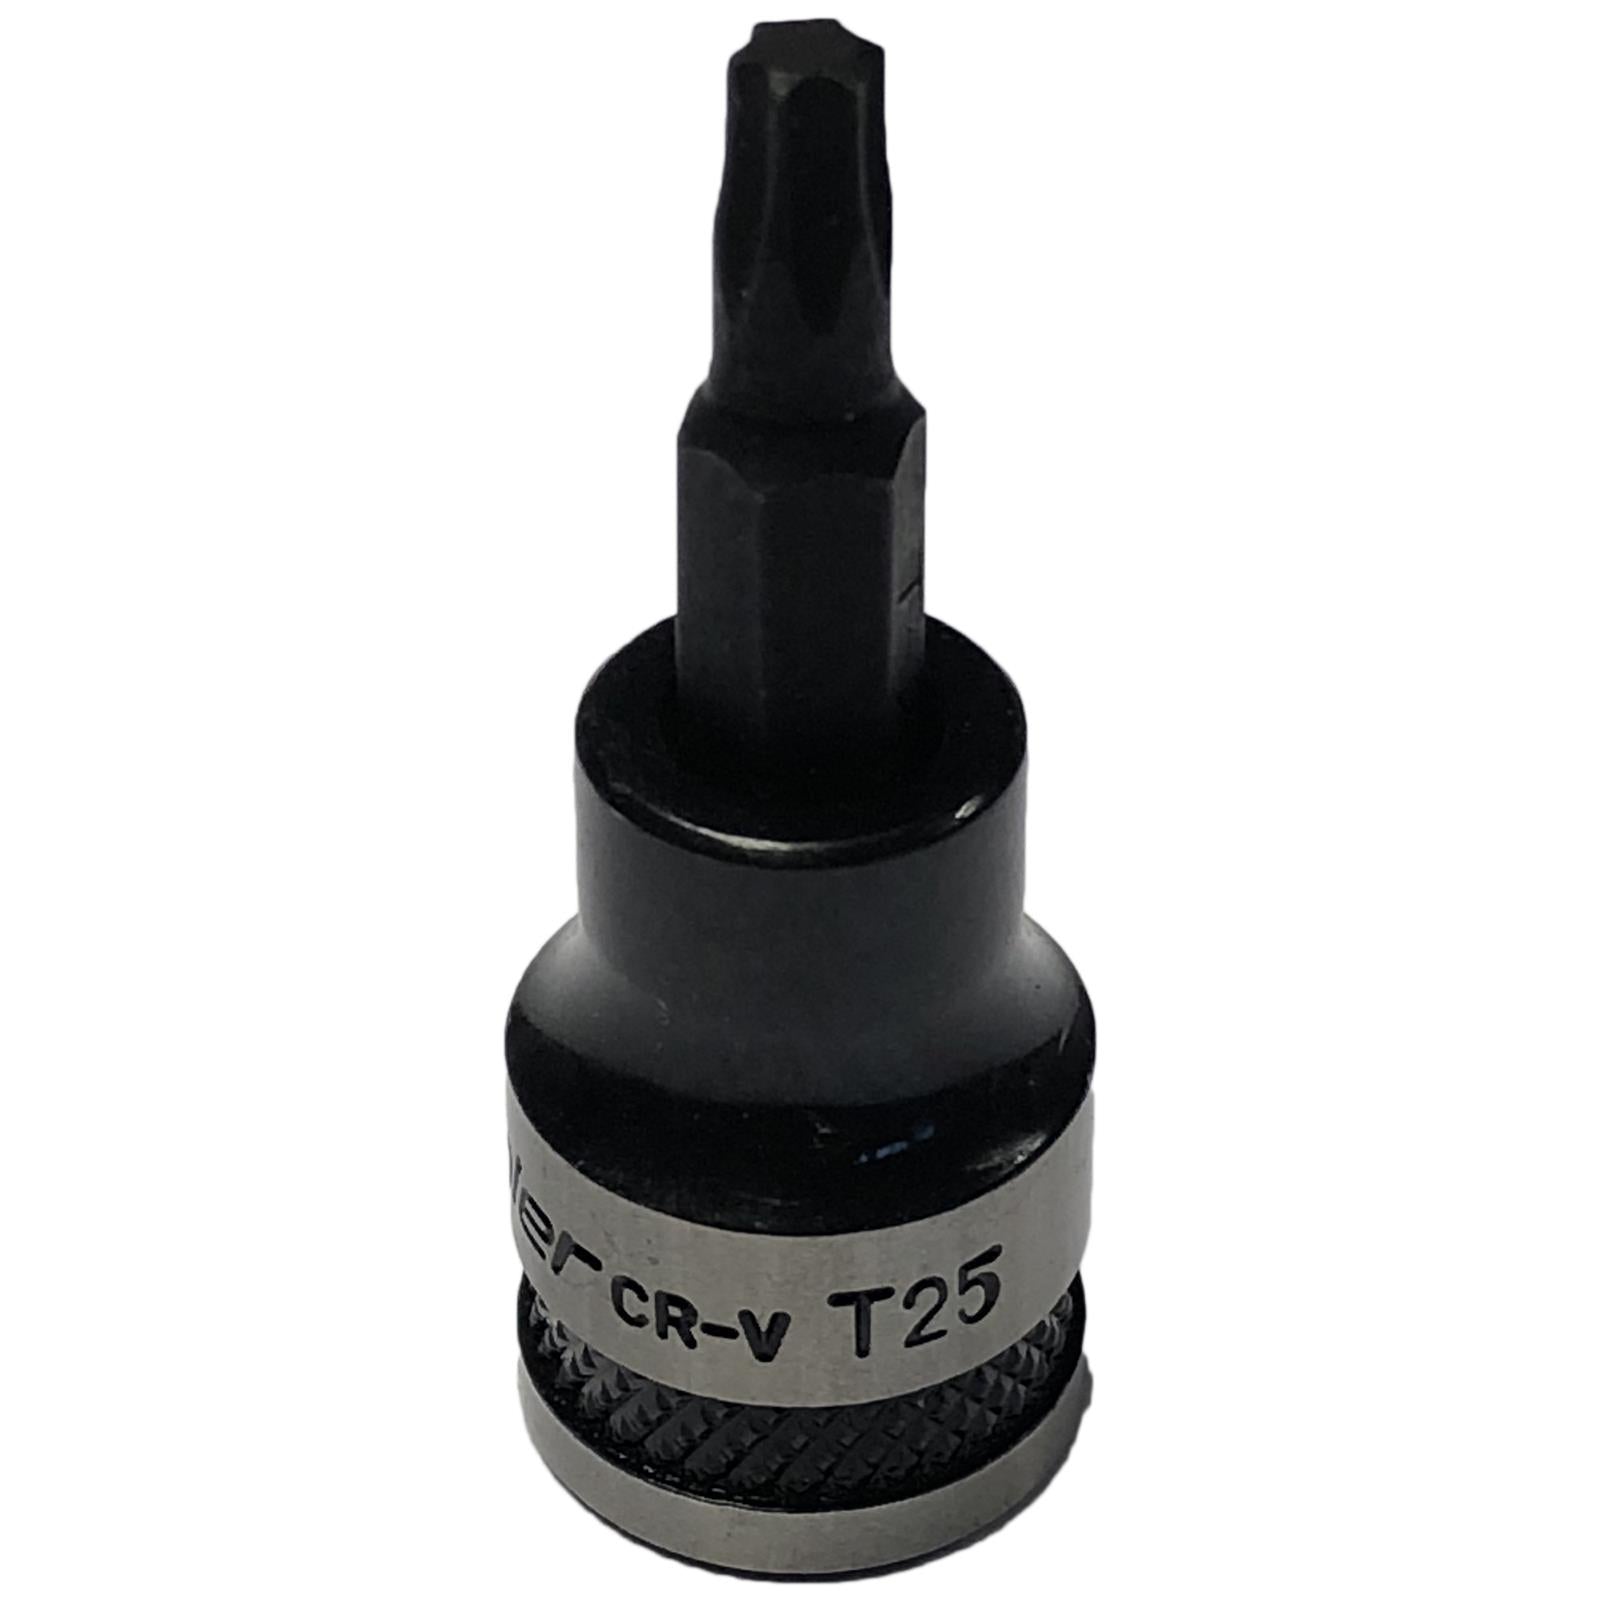 Sealey TRX-Star Socket Bit 3/8" Drive T25 Premier Black Torx